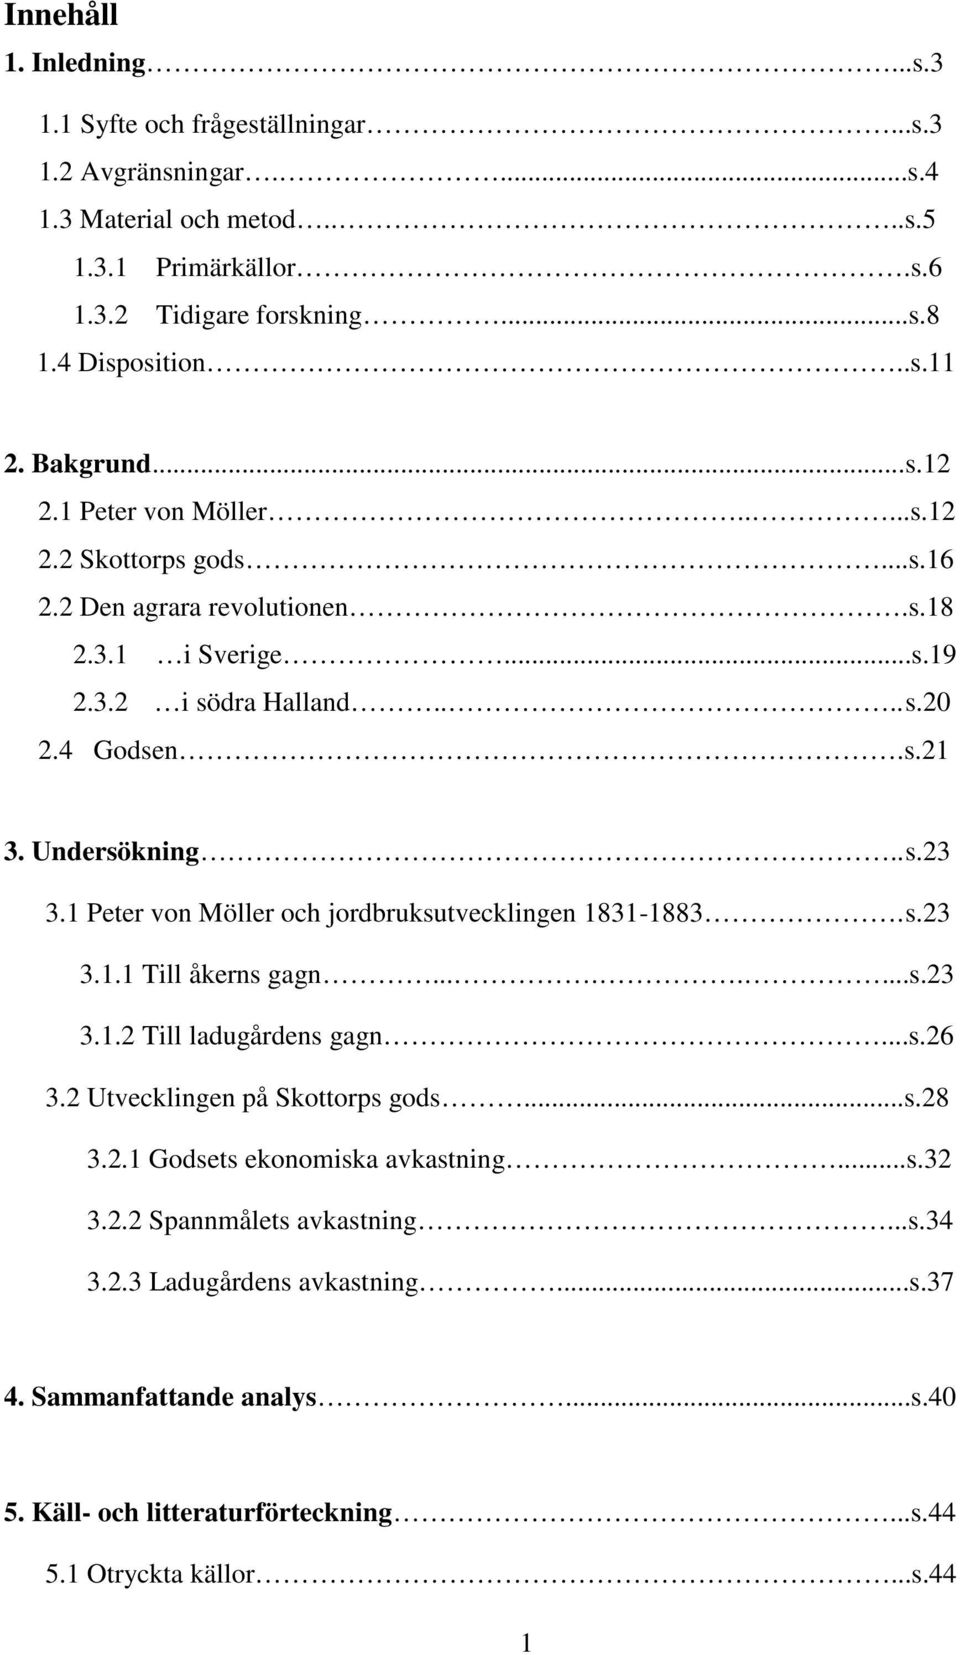 1 Peter von Möller och jordbruksutvecklingen 1831-1883. s.23 3.1.1 Till åkerns gagn........s.23 3.1.2 Till ladugårdens gagn...s.26 3.2 Utvecklingen på Skottorps gods...s.28 3.2.1 Godsets ekonomiska avkastning.